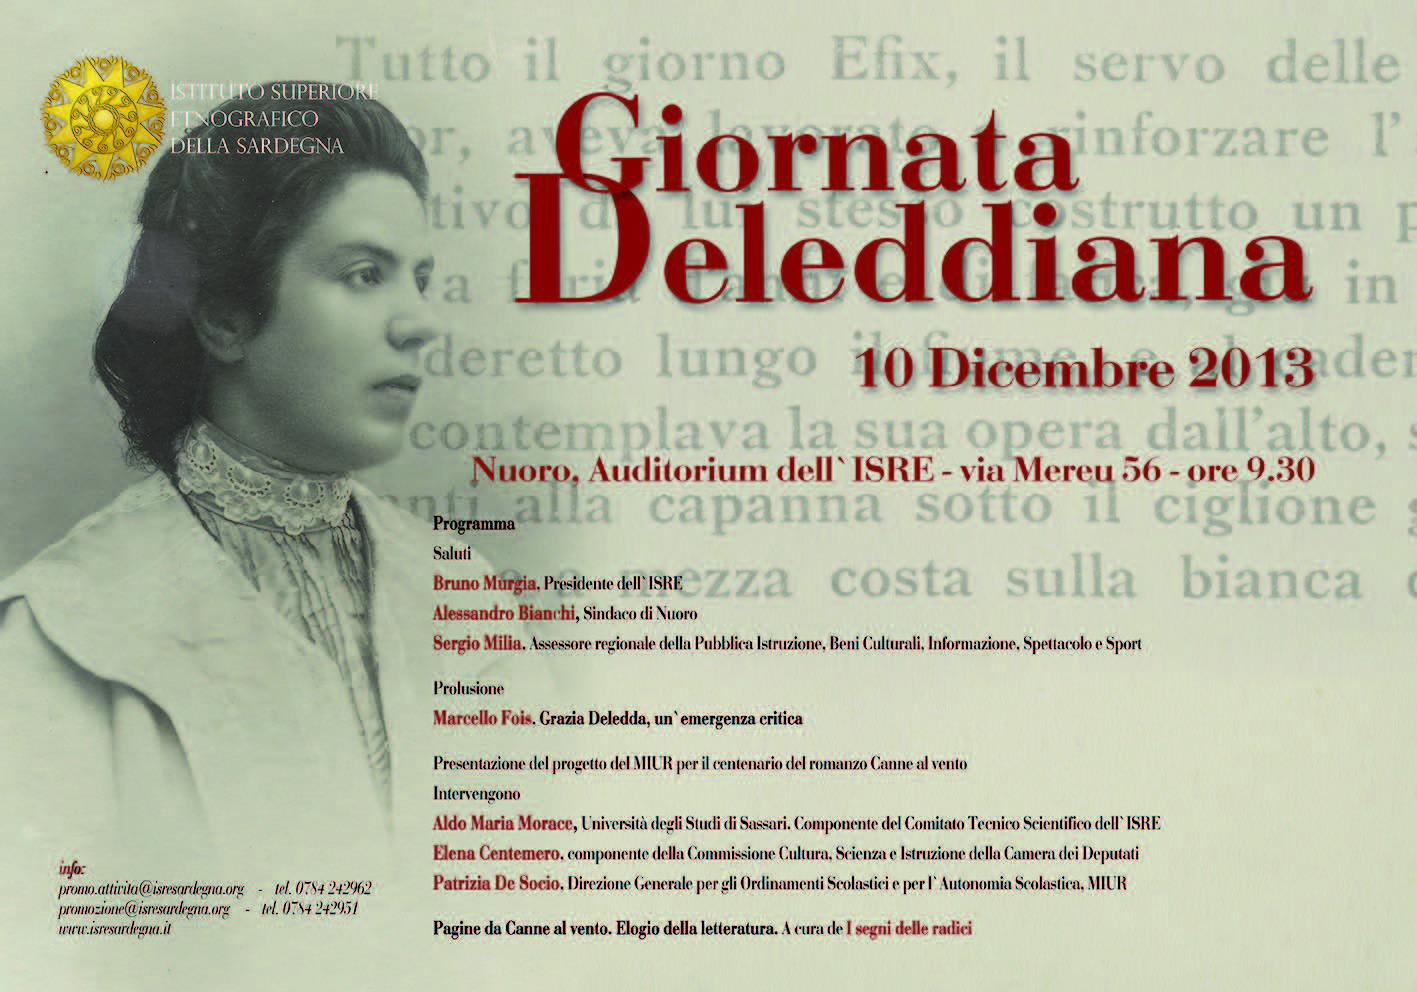 Giornata deleddiana 10 dicembre 2013 Istituto Superiore Etnografico della Sardegna Nuoro